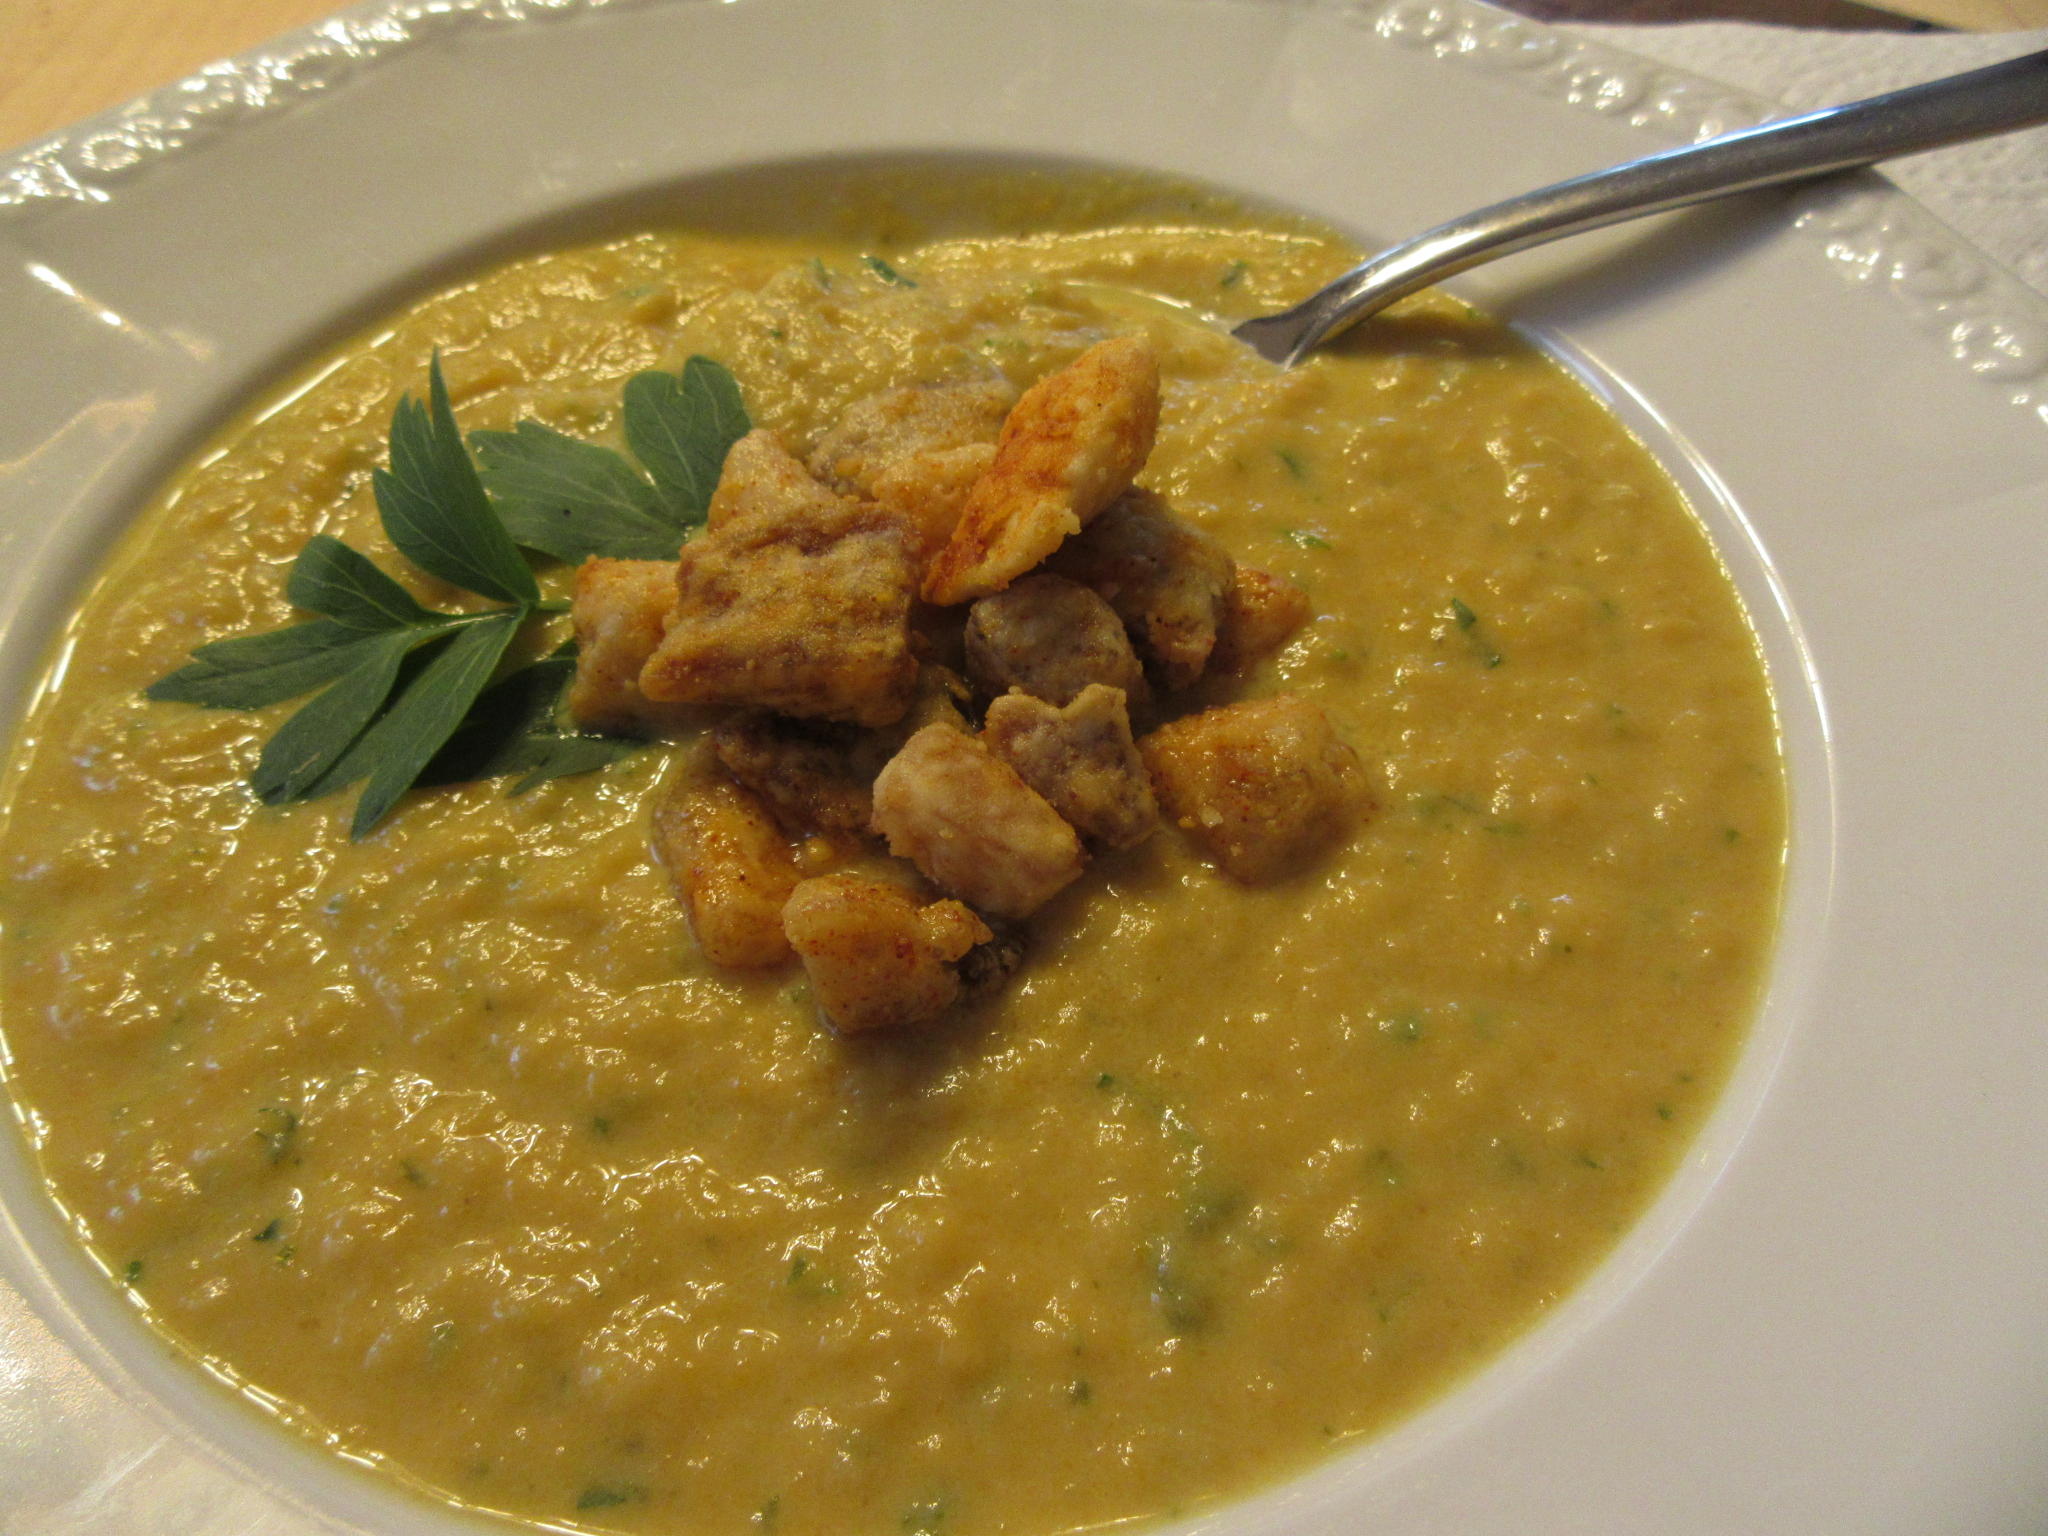 Suppen: Karotten-Sellerie-Creme mit Hähnchen-Croutons - Rezept
Eingereicht von lunapiena